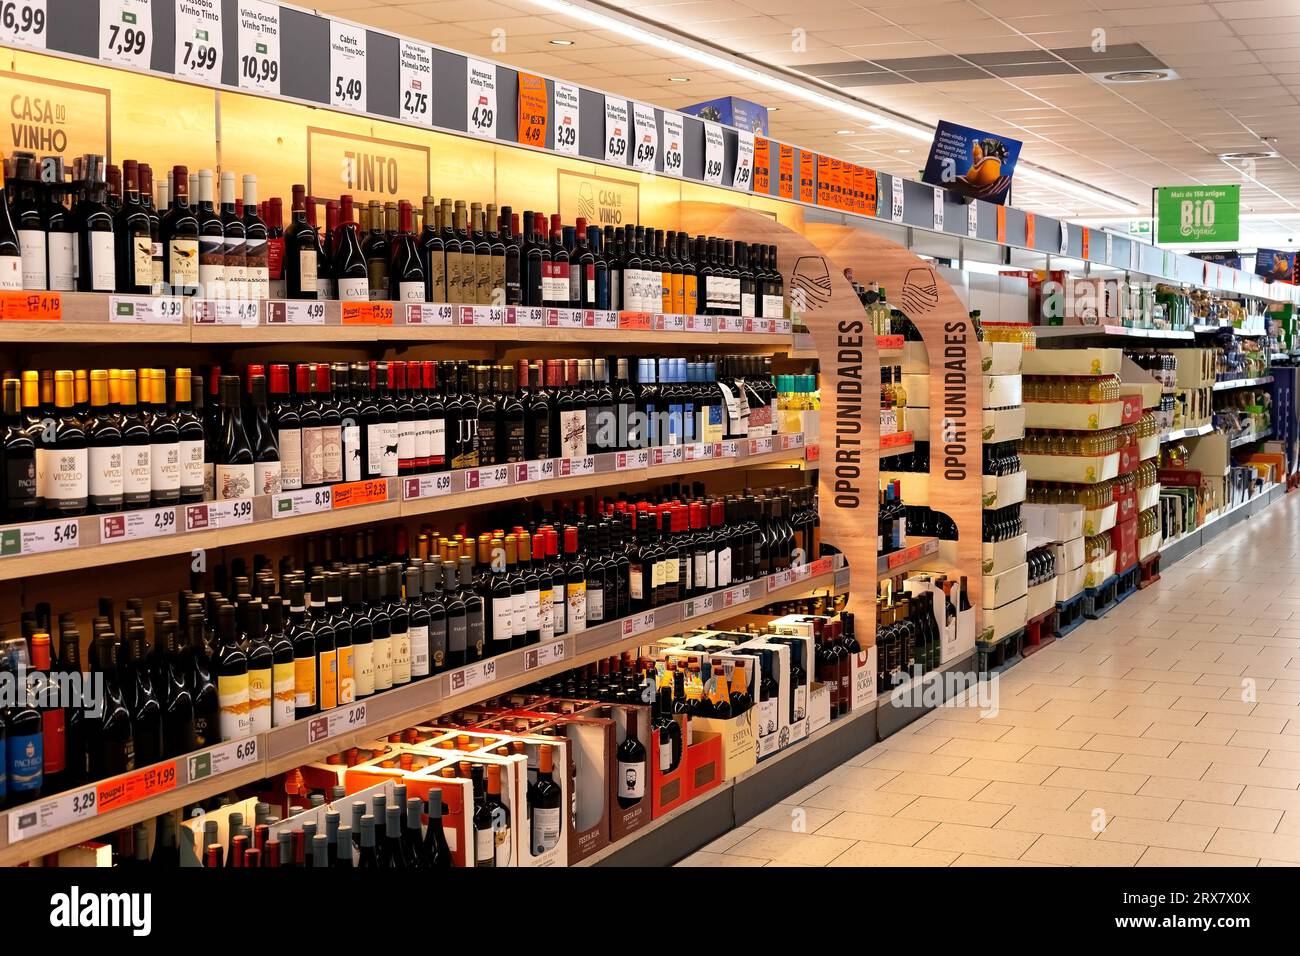 Weinbereich im Lidl Supermarkt Express Store in Leixoes im Stadtzentrum. Moderner Supermarkt. Wein, Spirituosen, Alkoholische Getränke. Stockfoto